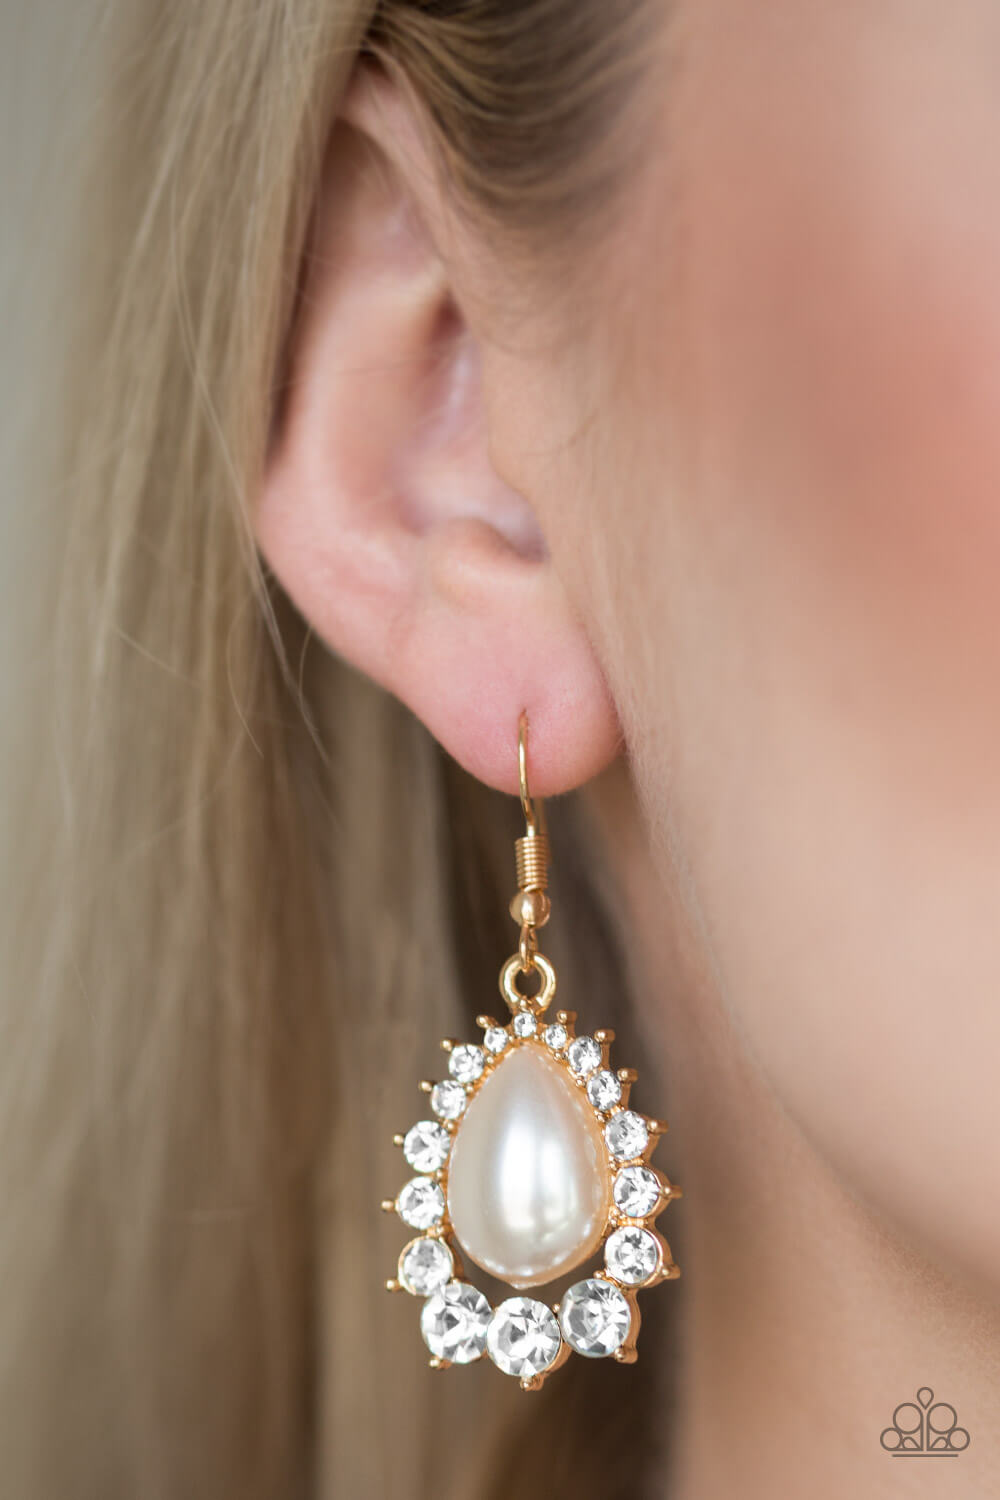 Regal Renewal - Gold Earrings - Princess Glam Shop